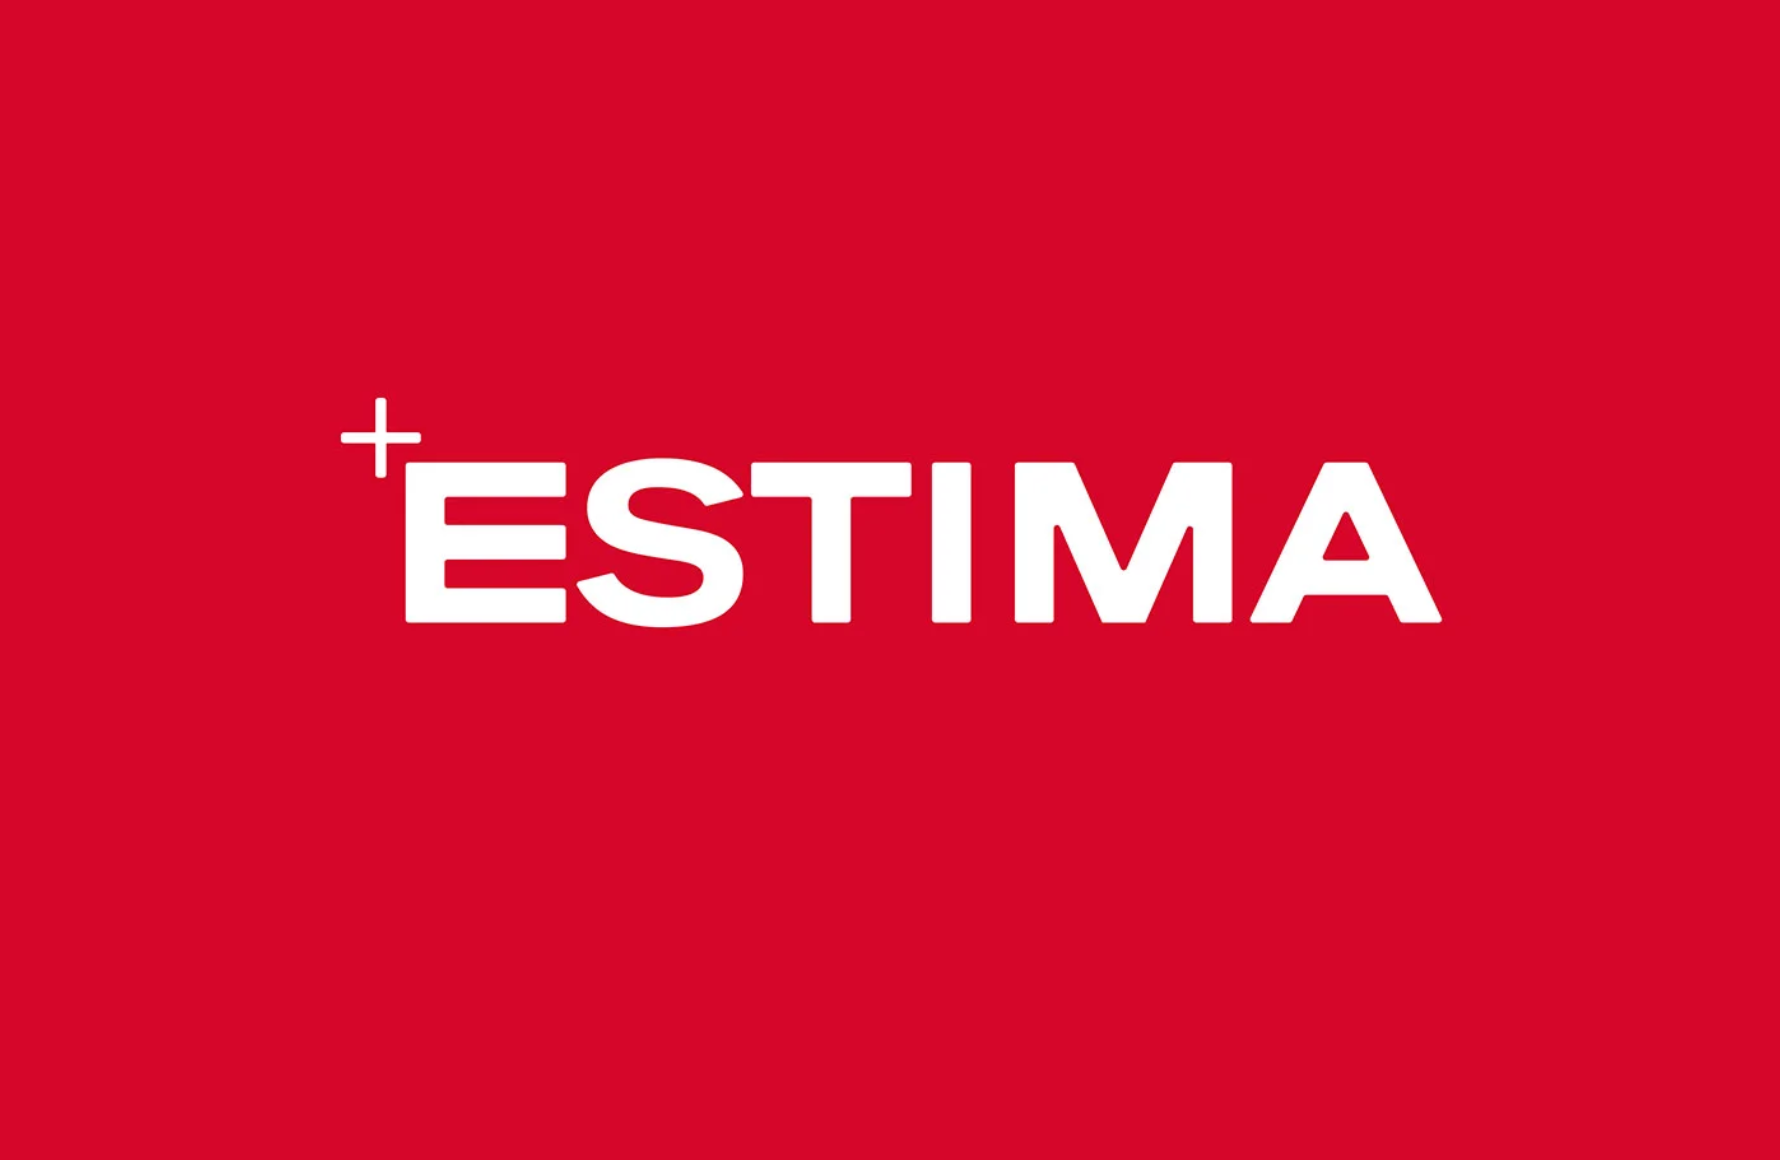  ™Estima's new corporate identity